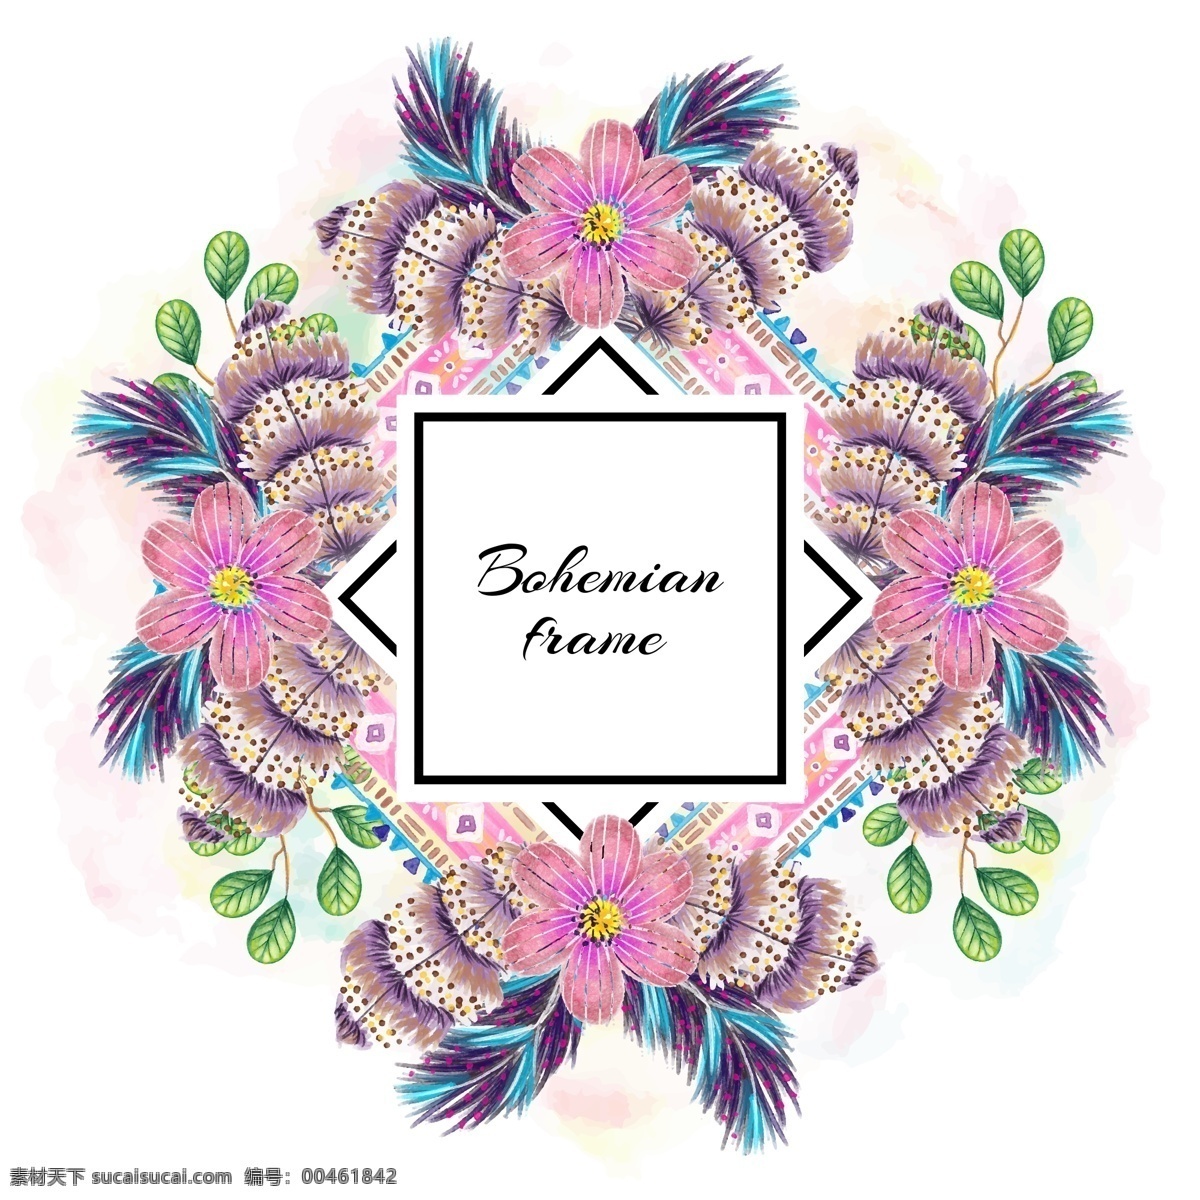 纷 紫 花蕊 卡通 矢量 花朵 平面素材 设计素材 矢量素材 装饰